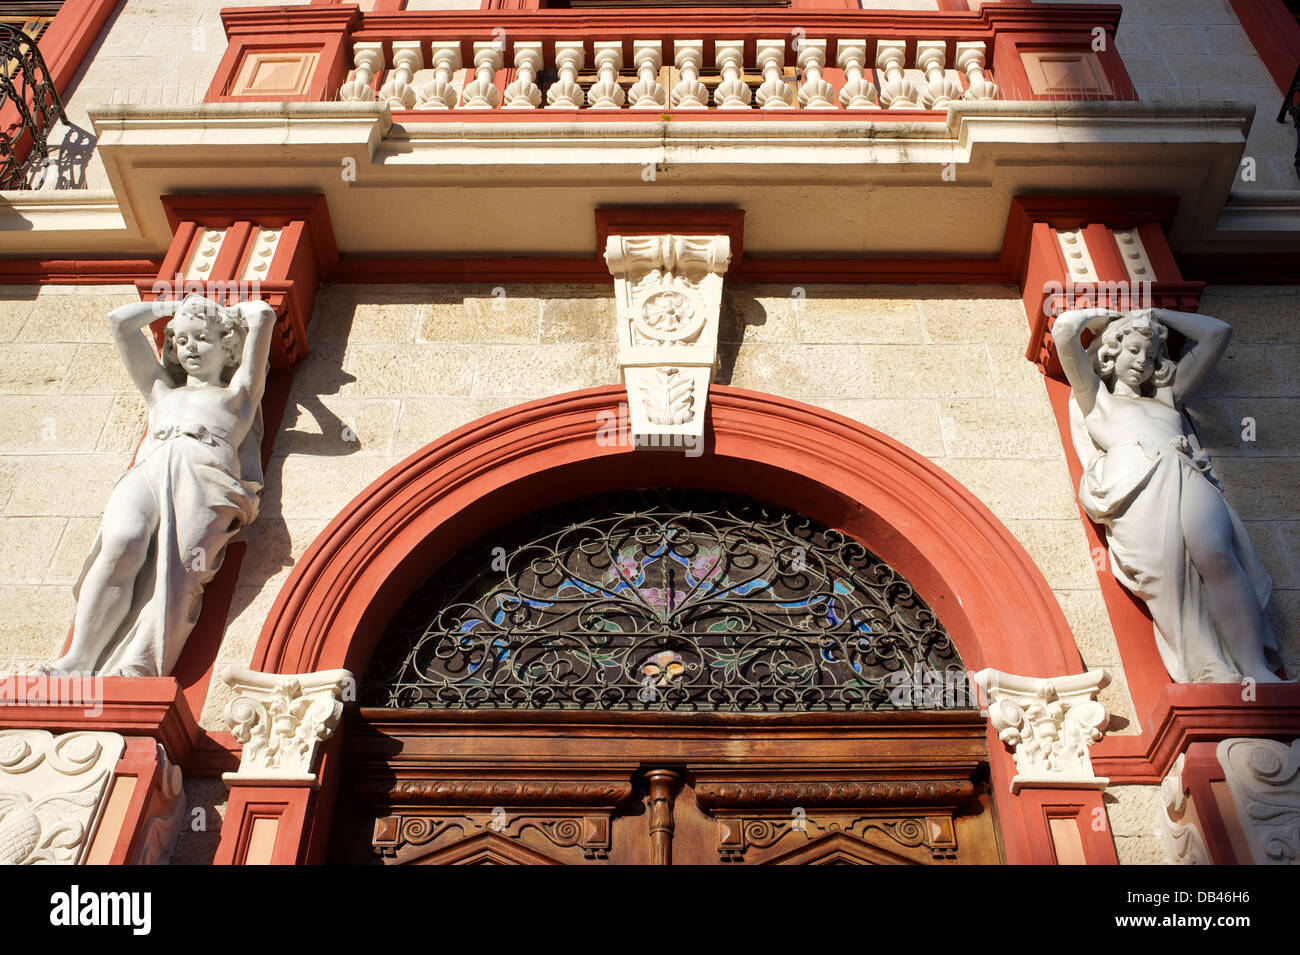 Detalle del edificio histórico, Ponce, Puerto Rico Foto de stock